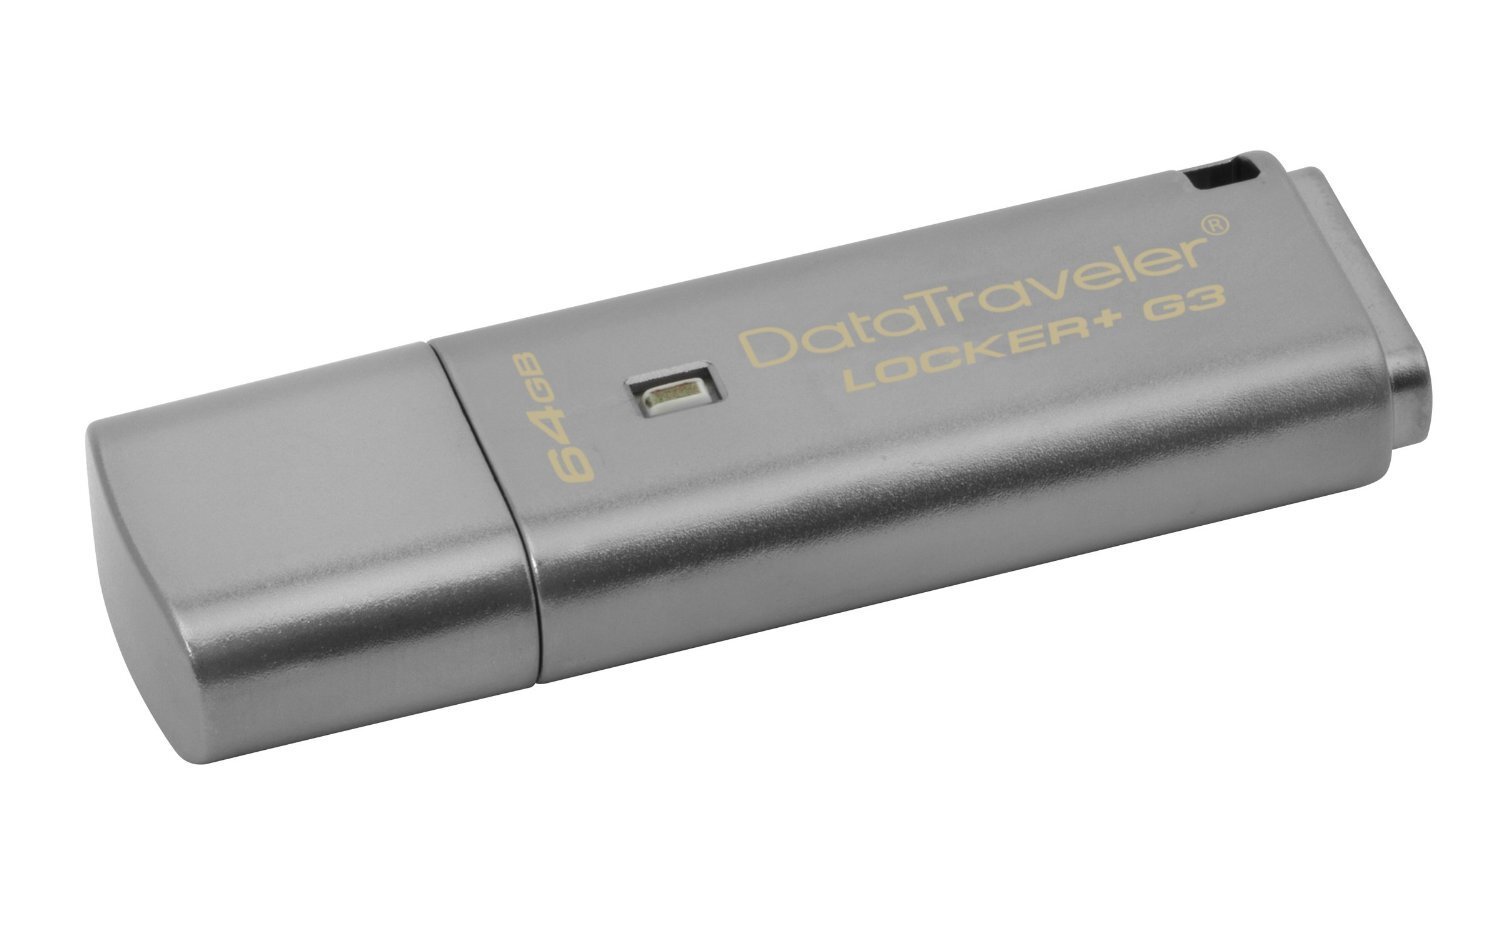 Накопитель USB 3.0 KINGSTON DT Locker+ G3 64GB Metal Silver Security (DTLPG3/64GB) фото 